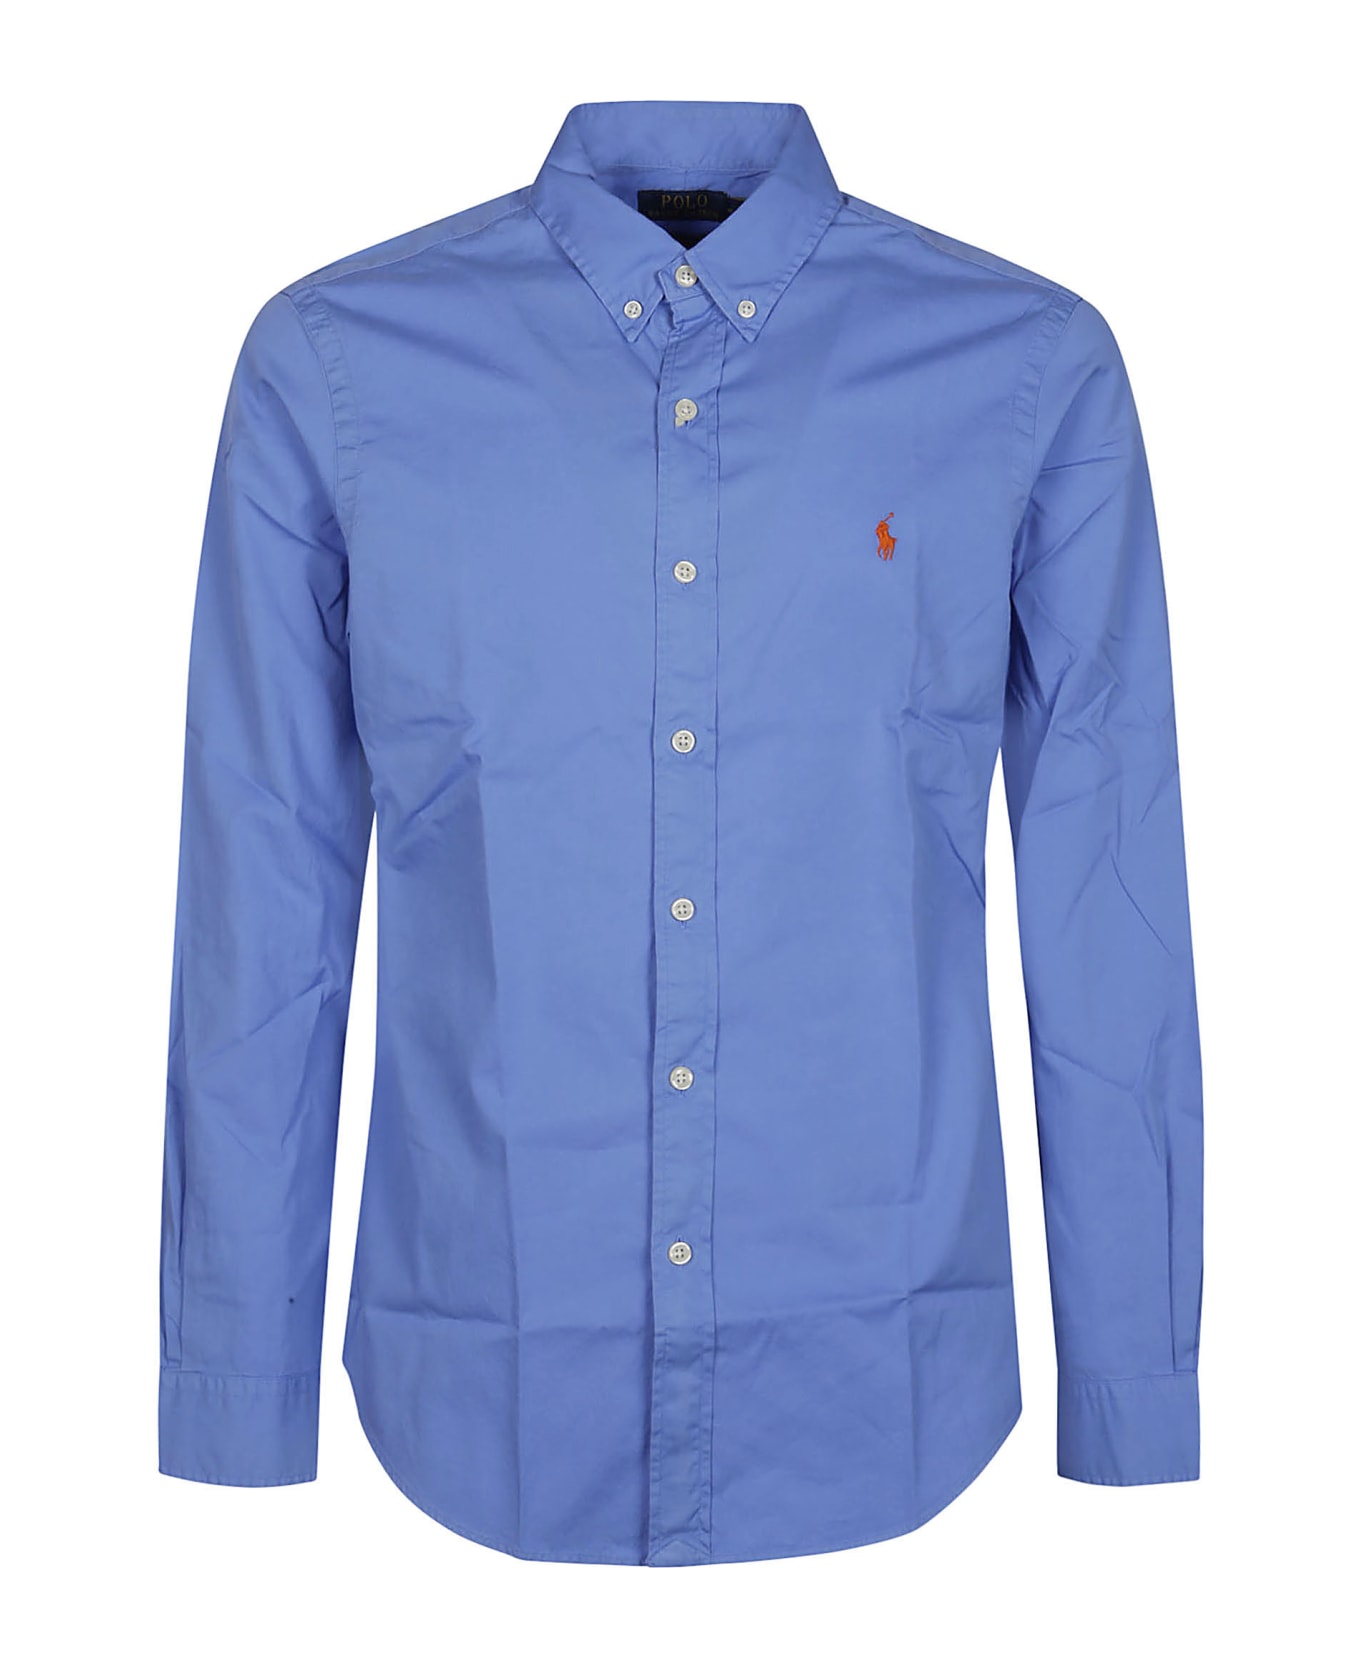 Polo Ralph Lauren Long Sleeve Sport Shirt - Harbor Island Blue